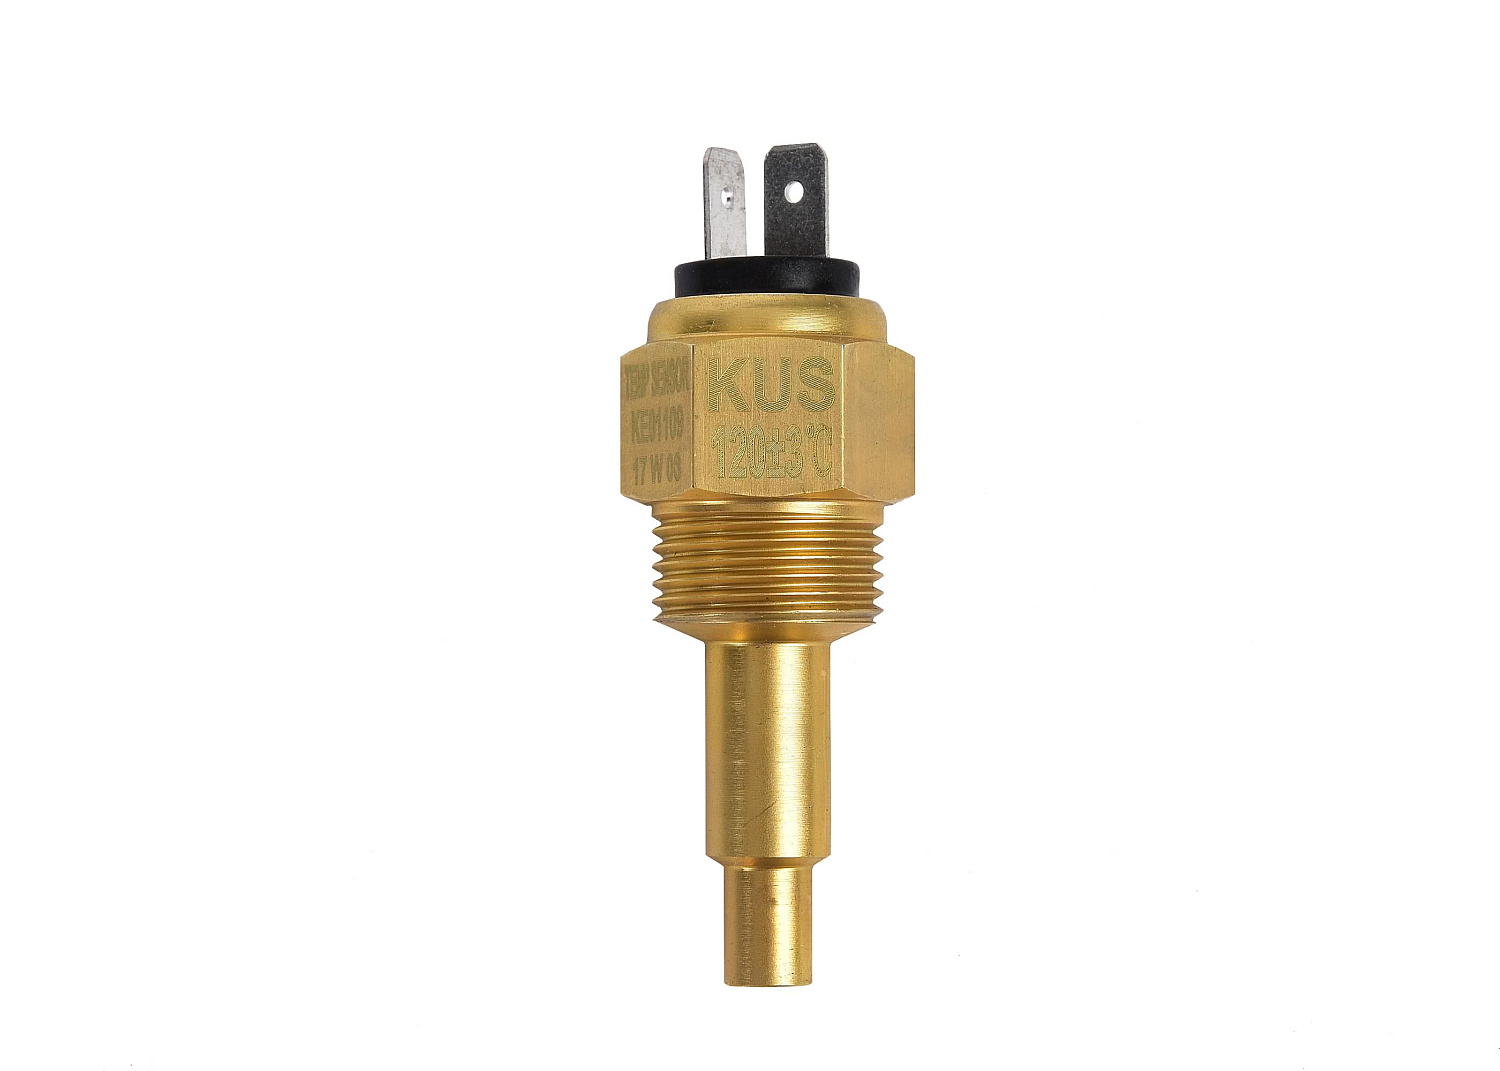 KUS Oil Temperature Sensor